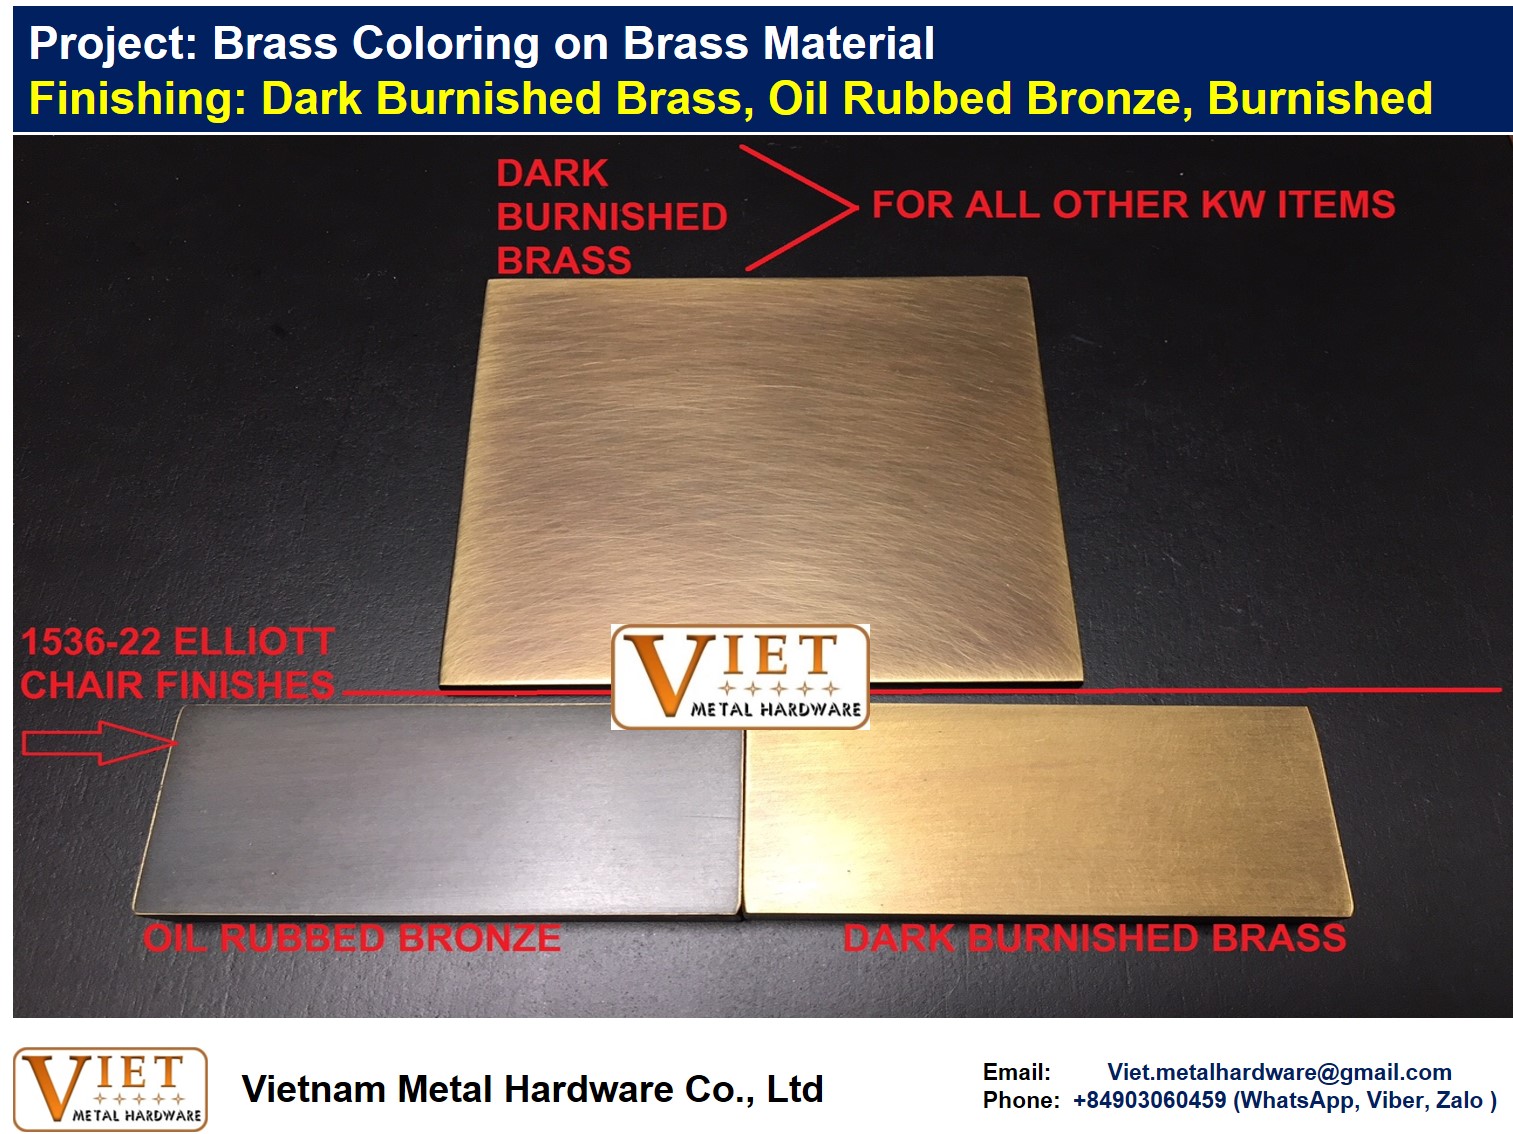 Burnished Brass, Burnished Black Copper - VIETNAM METAL HARDWARE CO., LTD